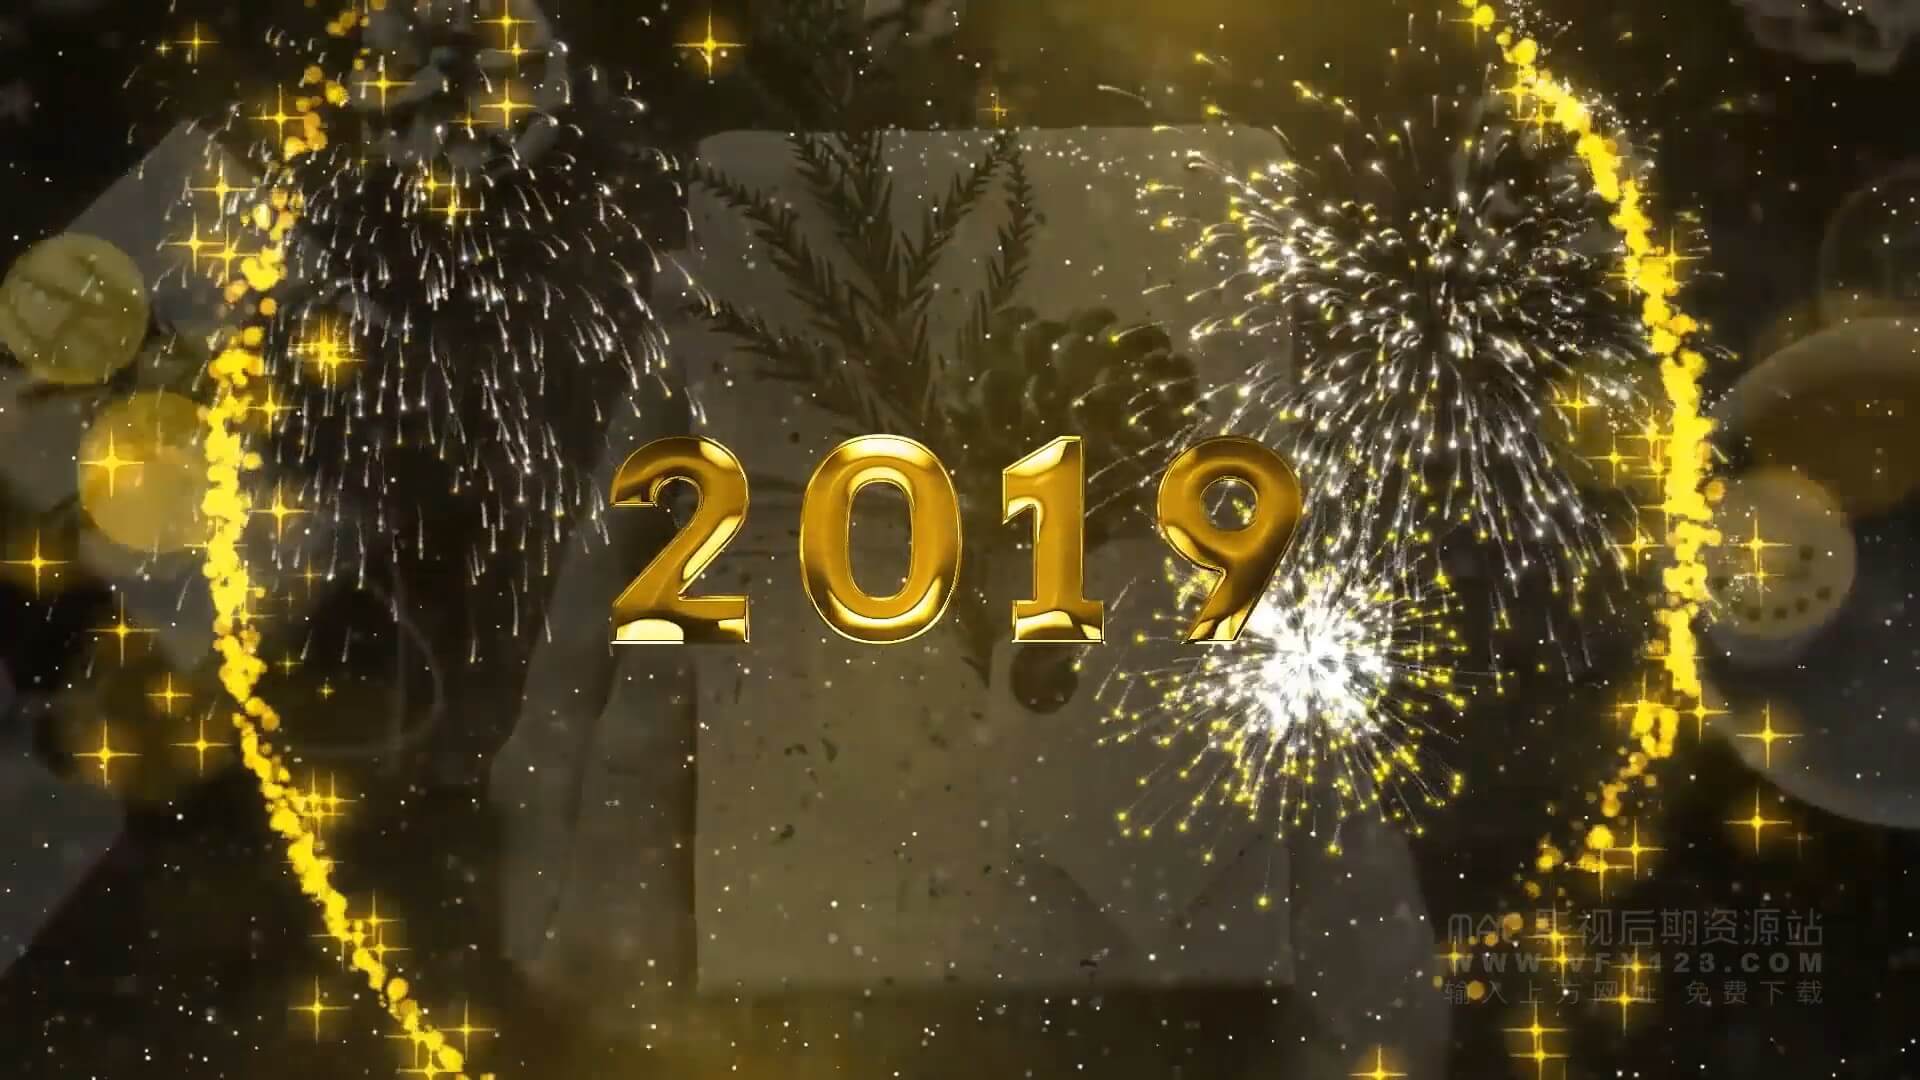 AE模板 大气恢弘粒子烟花新年倒计时 New Year Countdown 2019 | MAC影视后期资源站